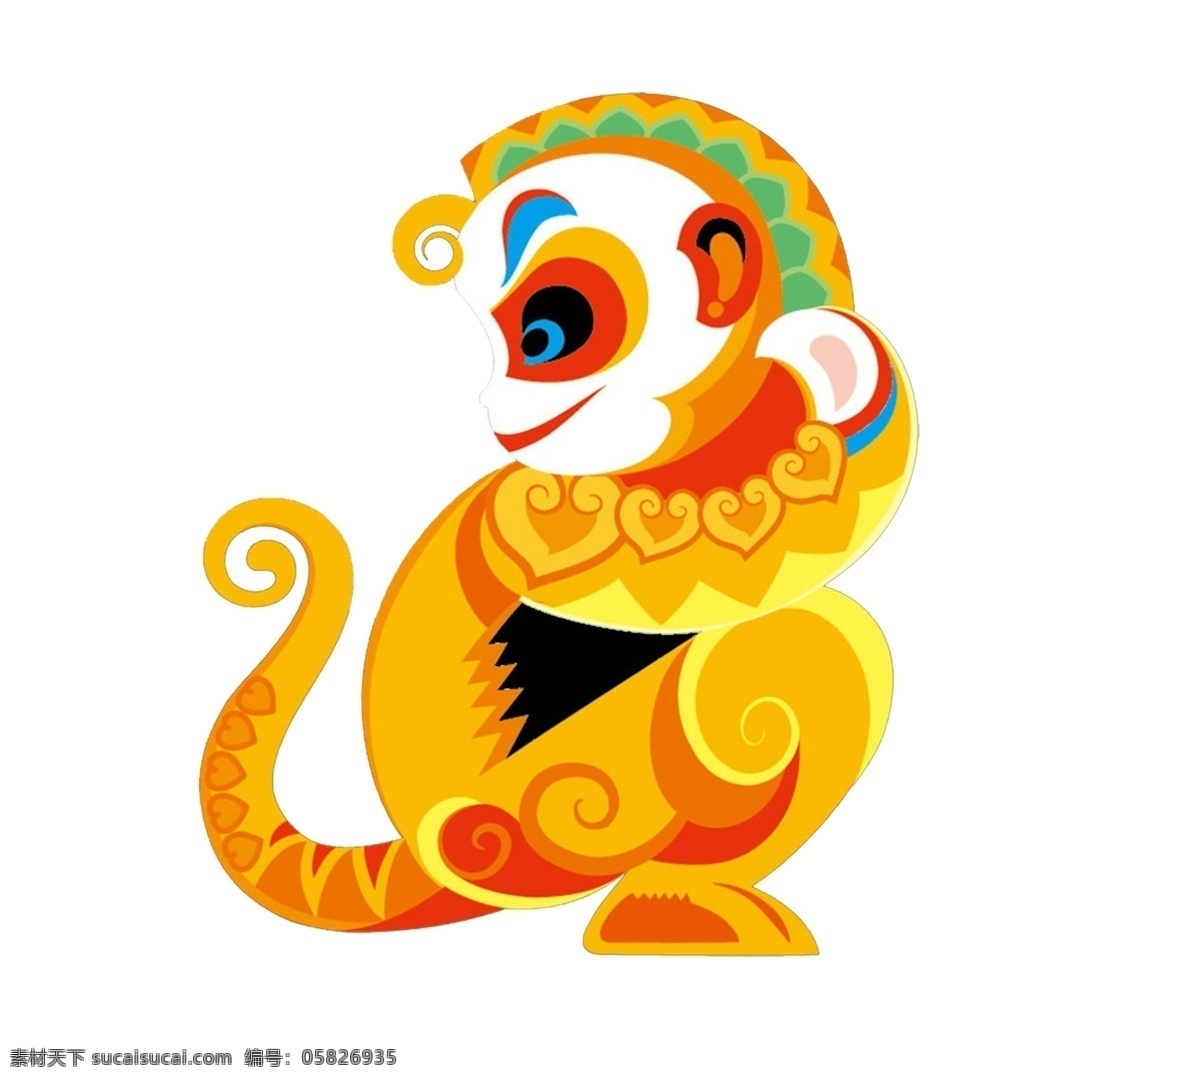 金丝猴 金木水火土 猴子 吉祥 祥瑞 新年 猴年大吉 动漫动画 动漫人物